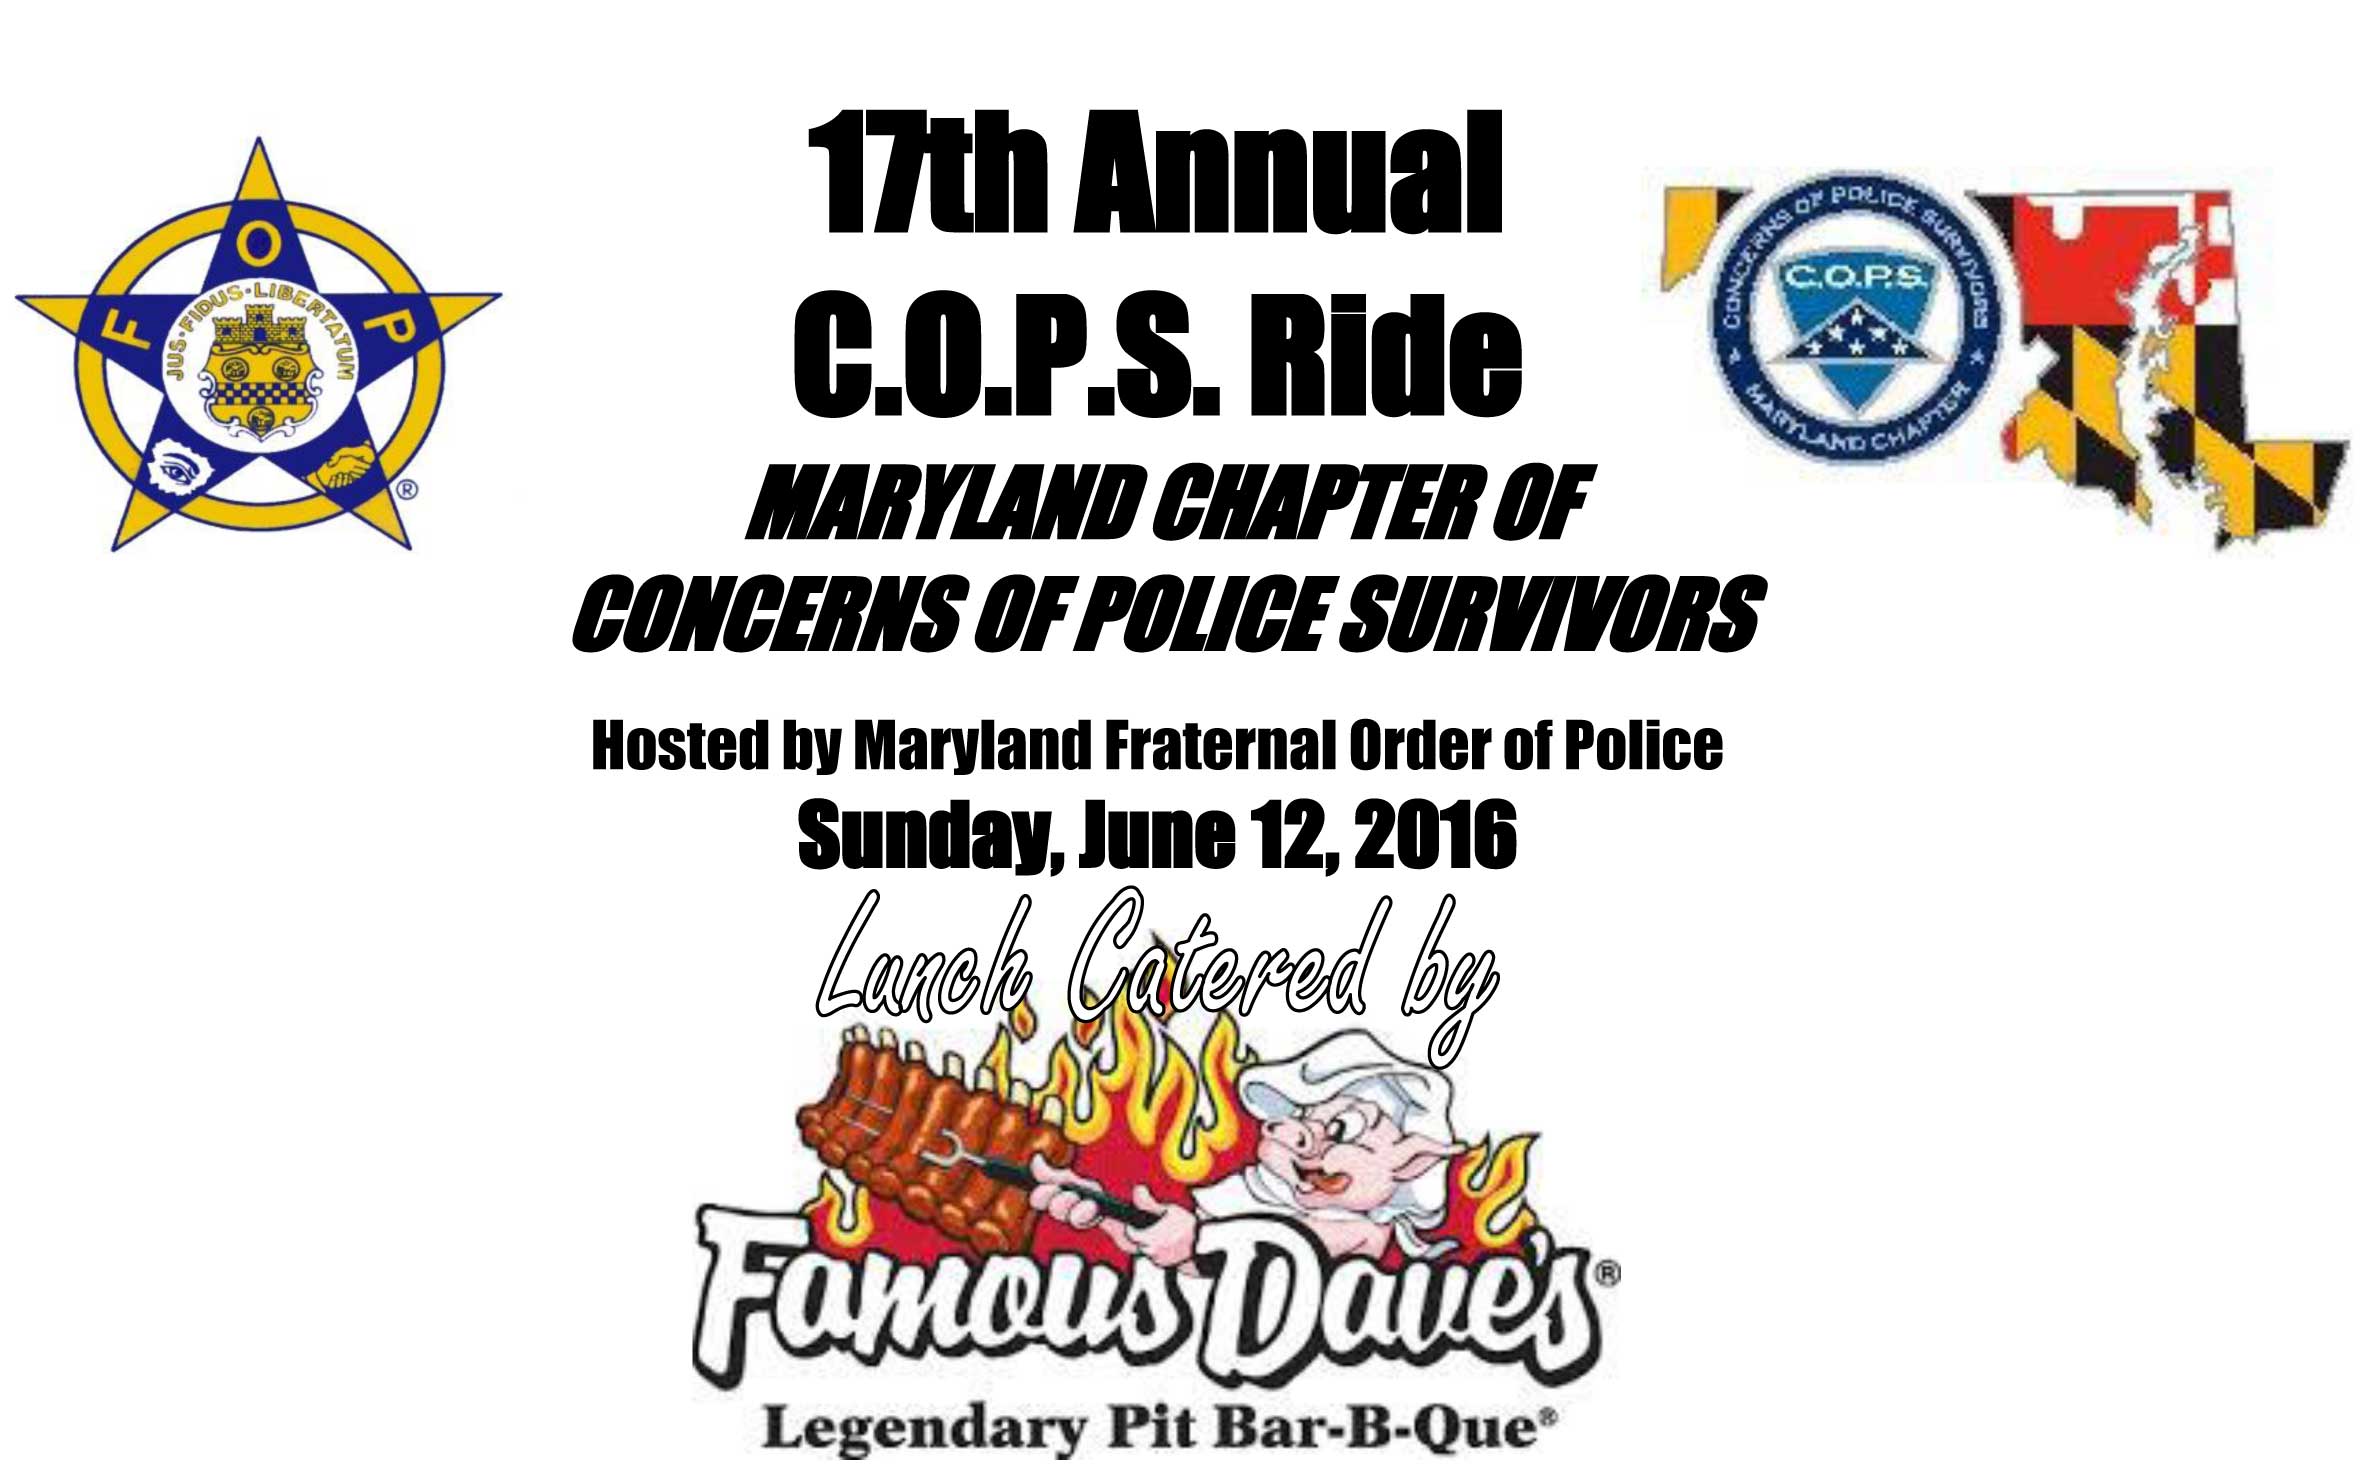 17th Annual C.O.P.S. Ride Info